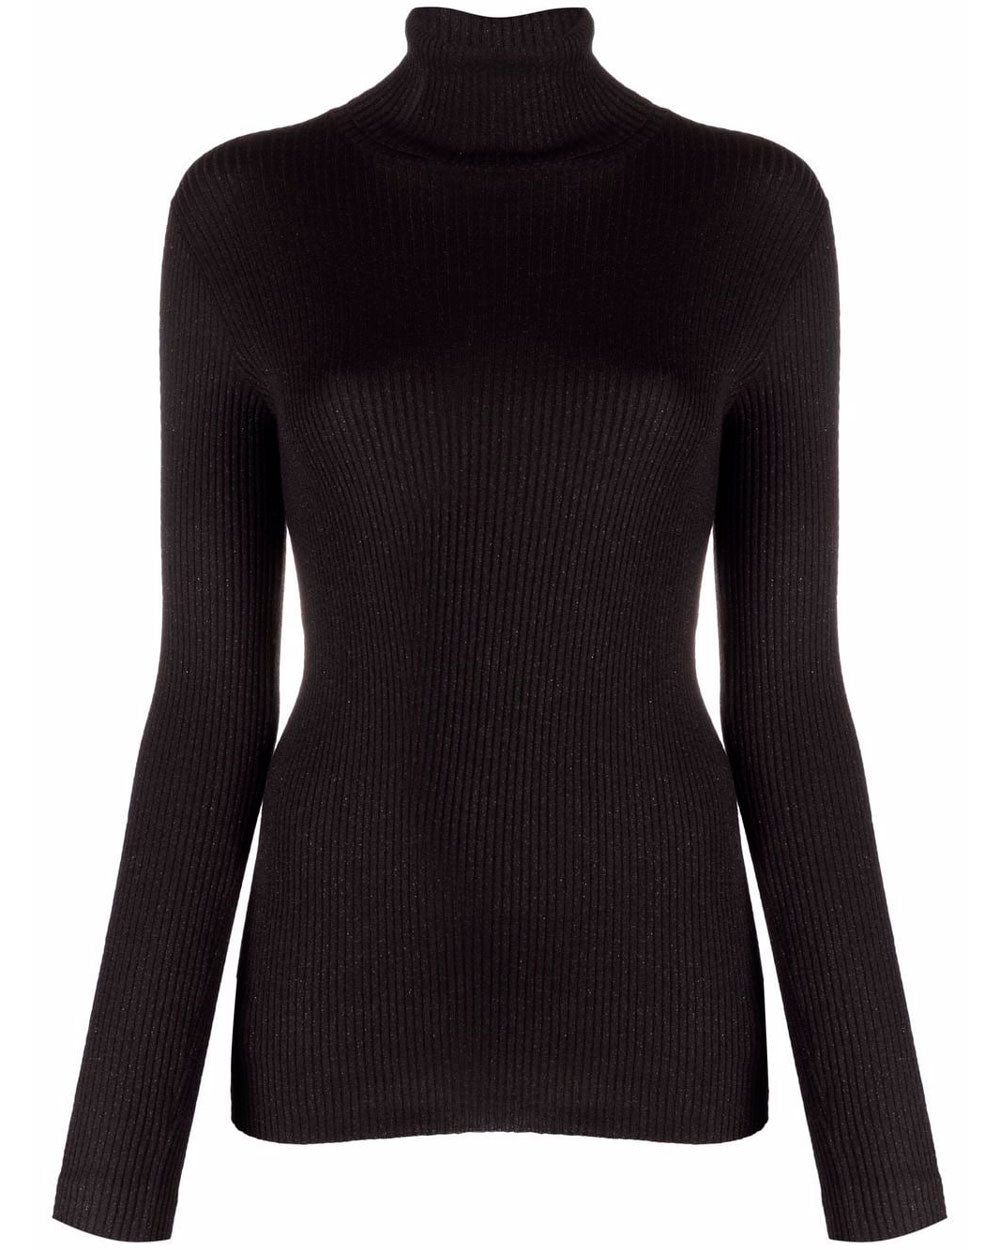 Black Ribbed Slim Fit Turtleneck Sweater